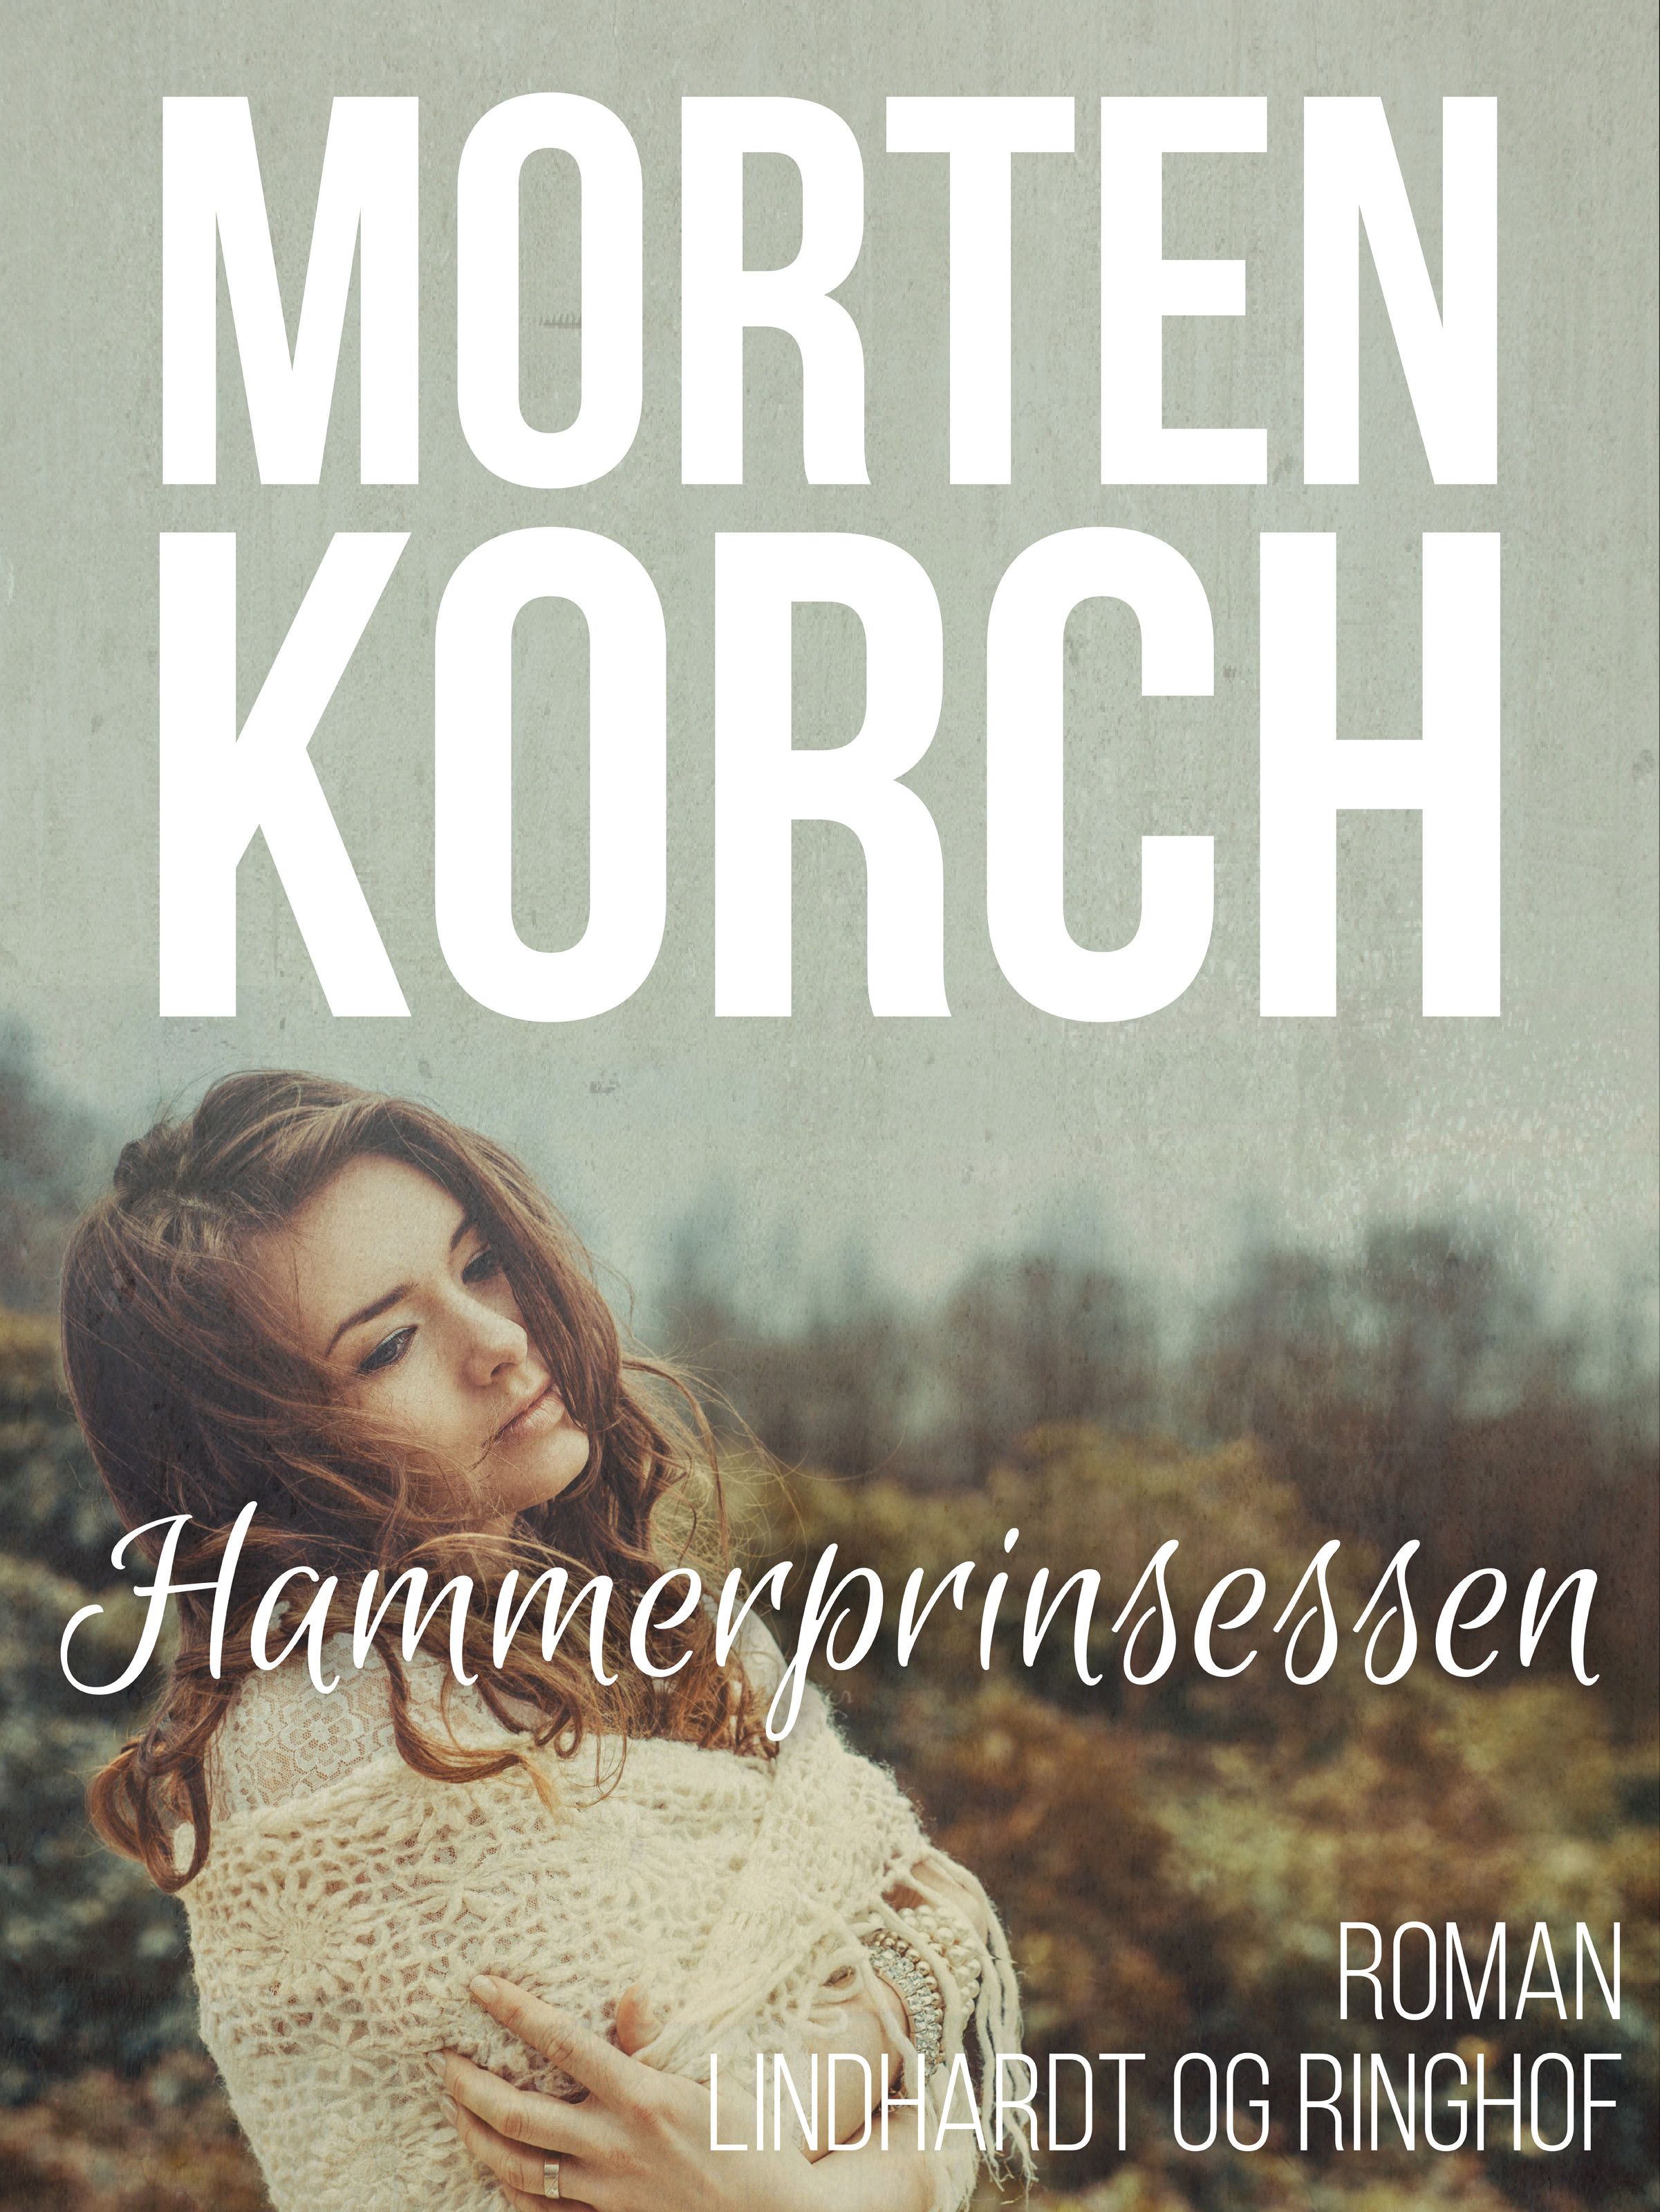 Hammerprinsessen, ljudbok av Morten Korch